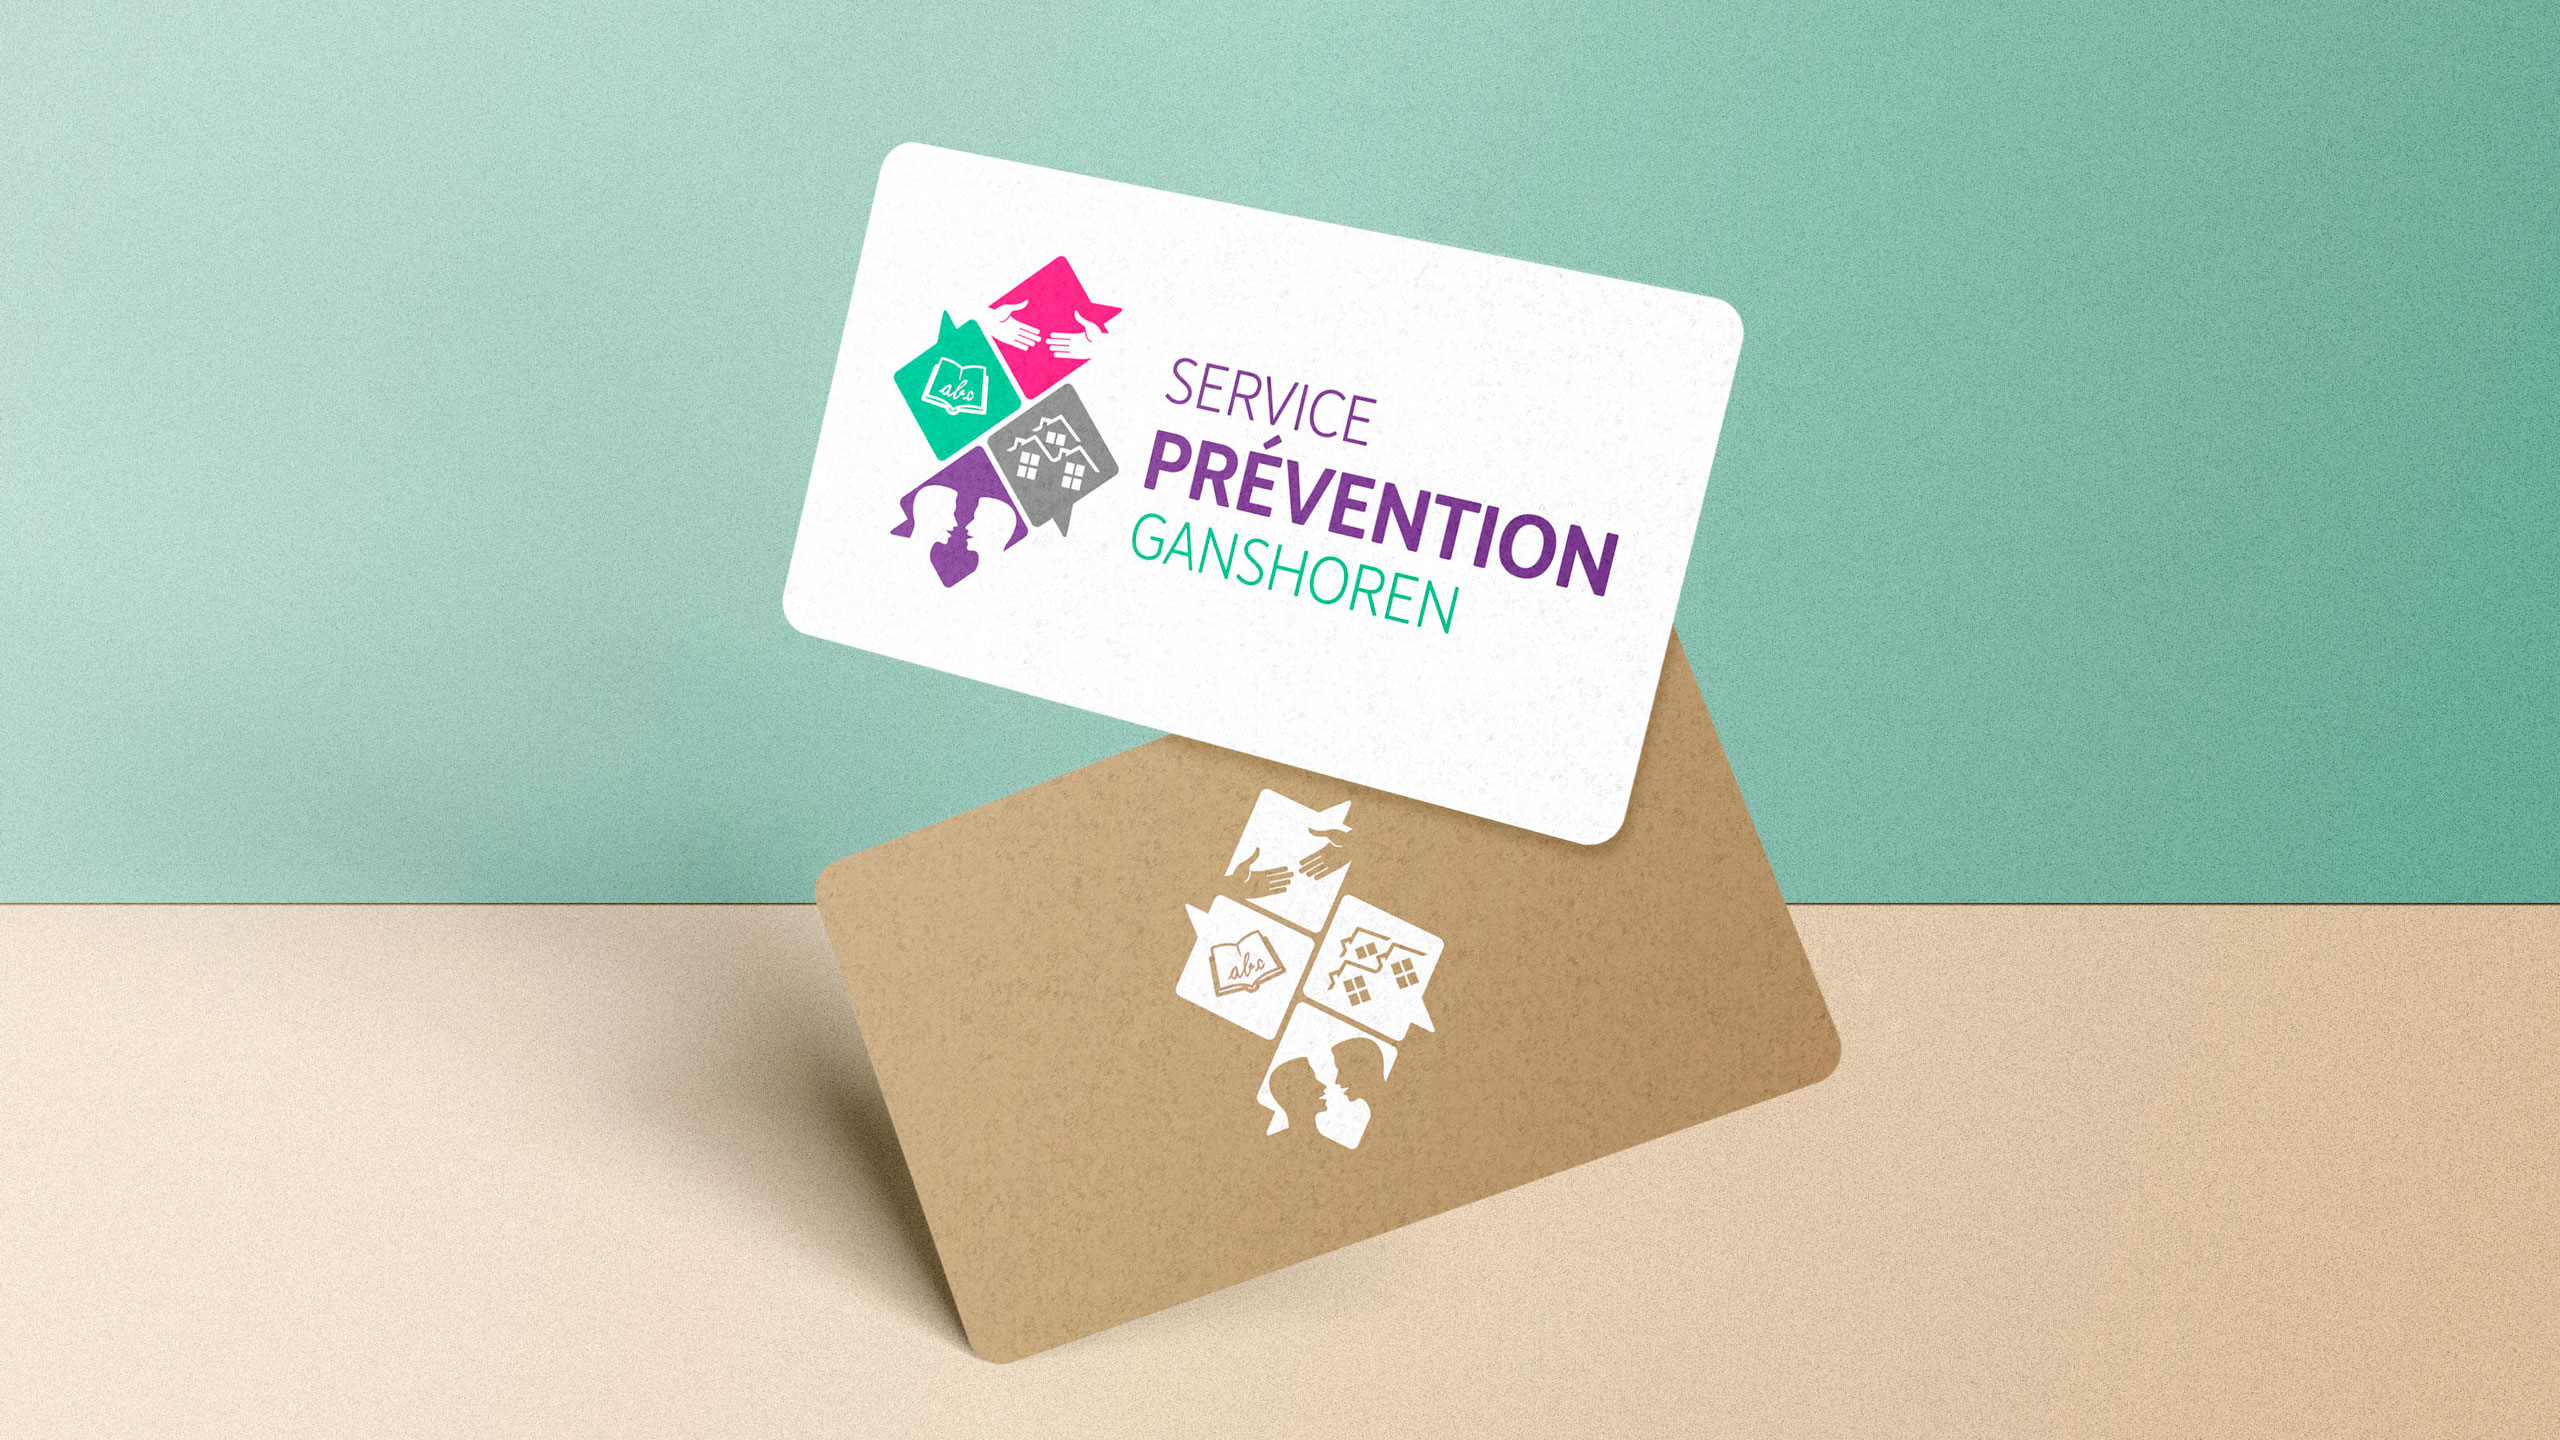 Sercice prevention ganshoren logo-Simpl. SRL est un studio de design graphique à Bruxelles